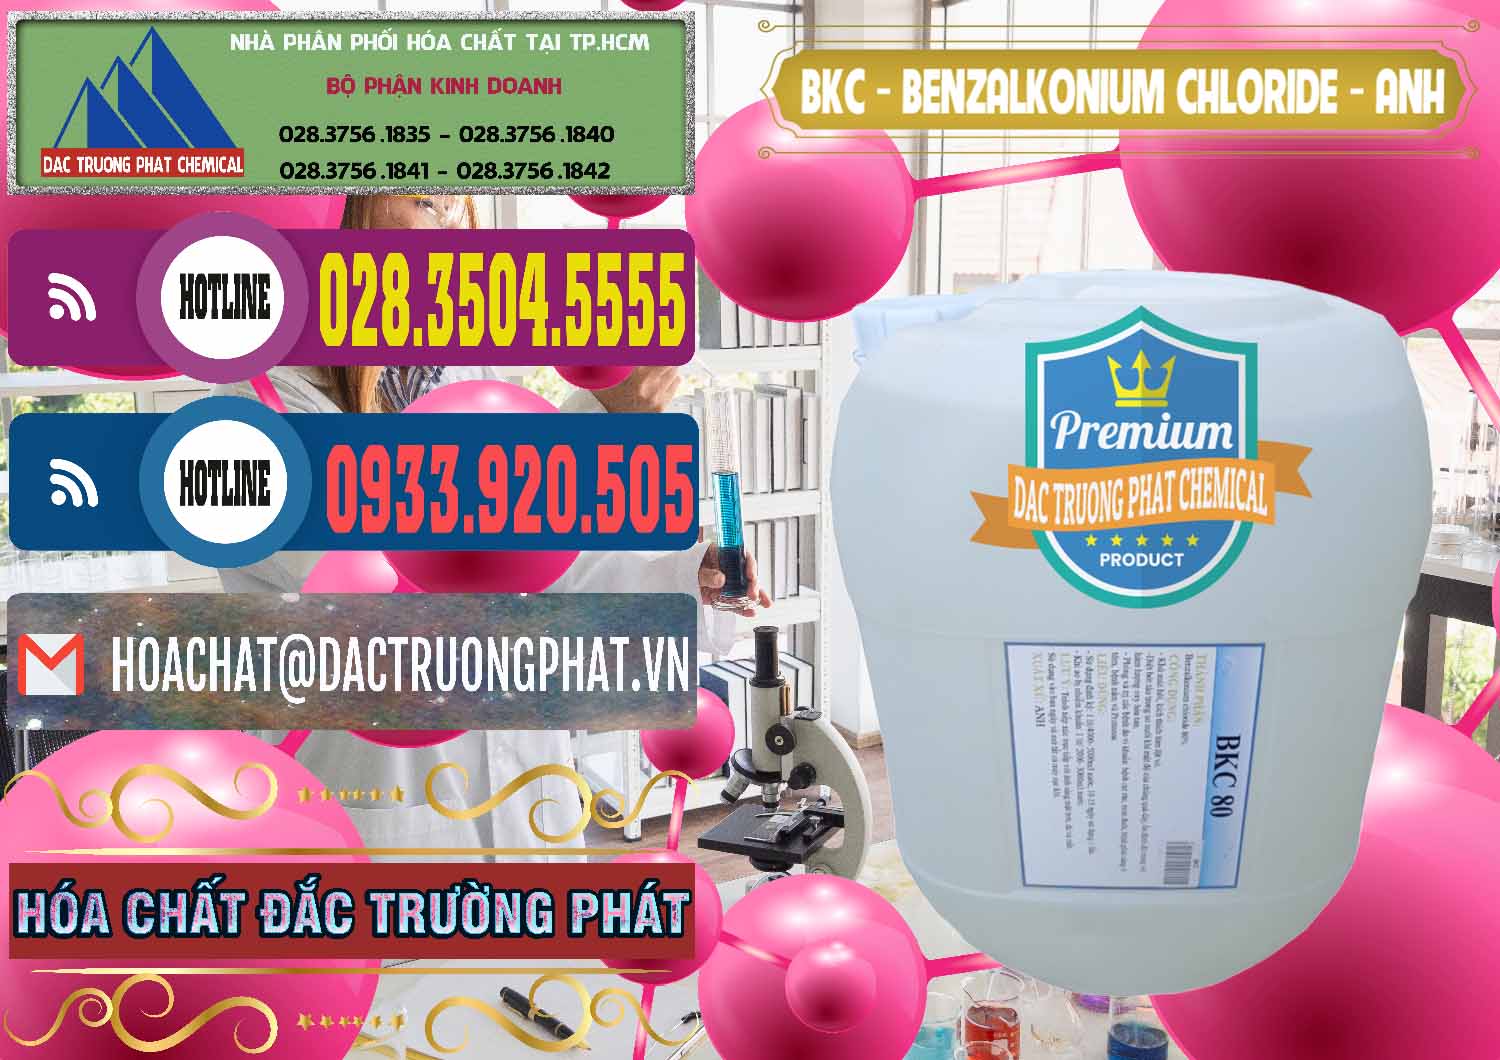 Công ty chuyên bán và cung ứng BKC - Benzalkonium Chloride Anh Quốc Uk Kingdoms - 0415 - Công ty bán & phân phối hóa chất tại TP.HCM - muabanhoachat.com.vn